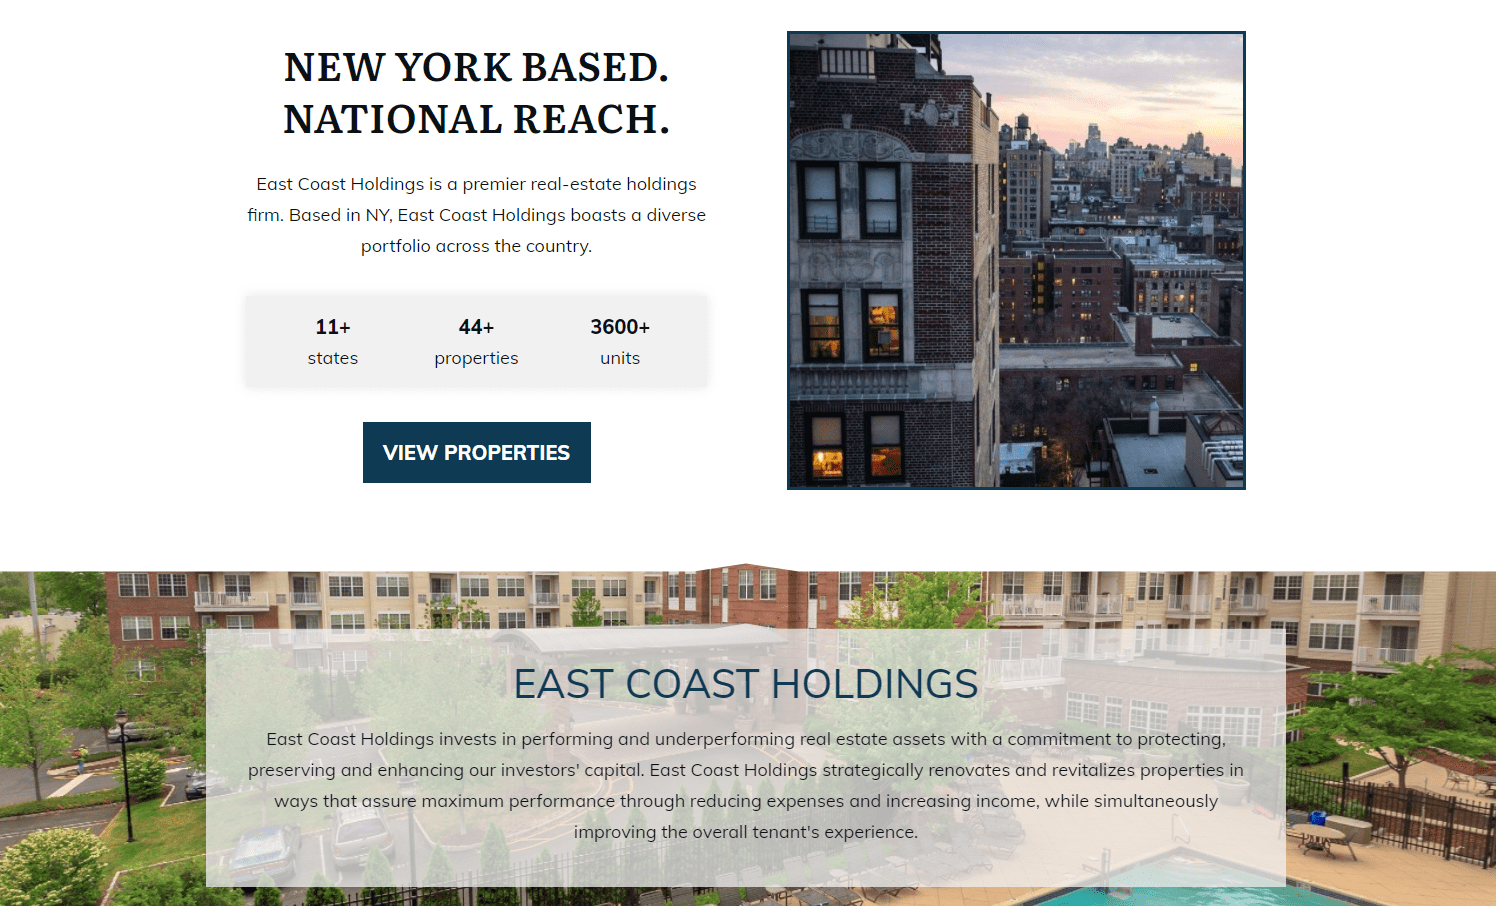 East Coast Holdings